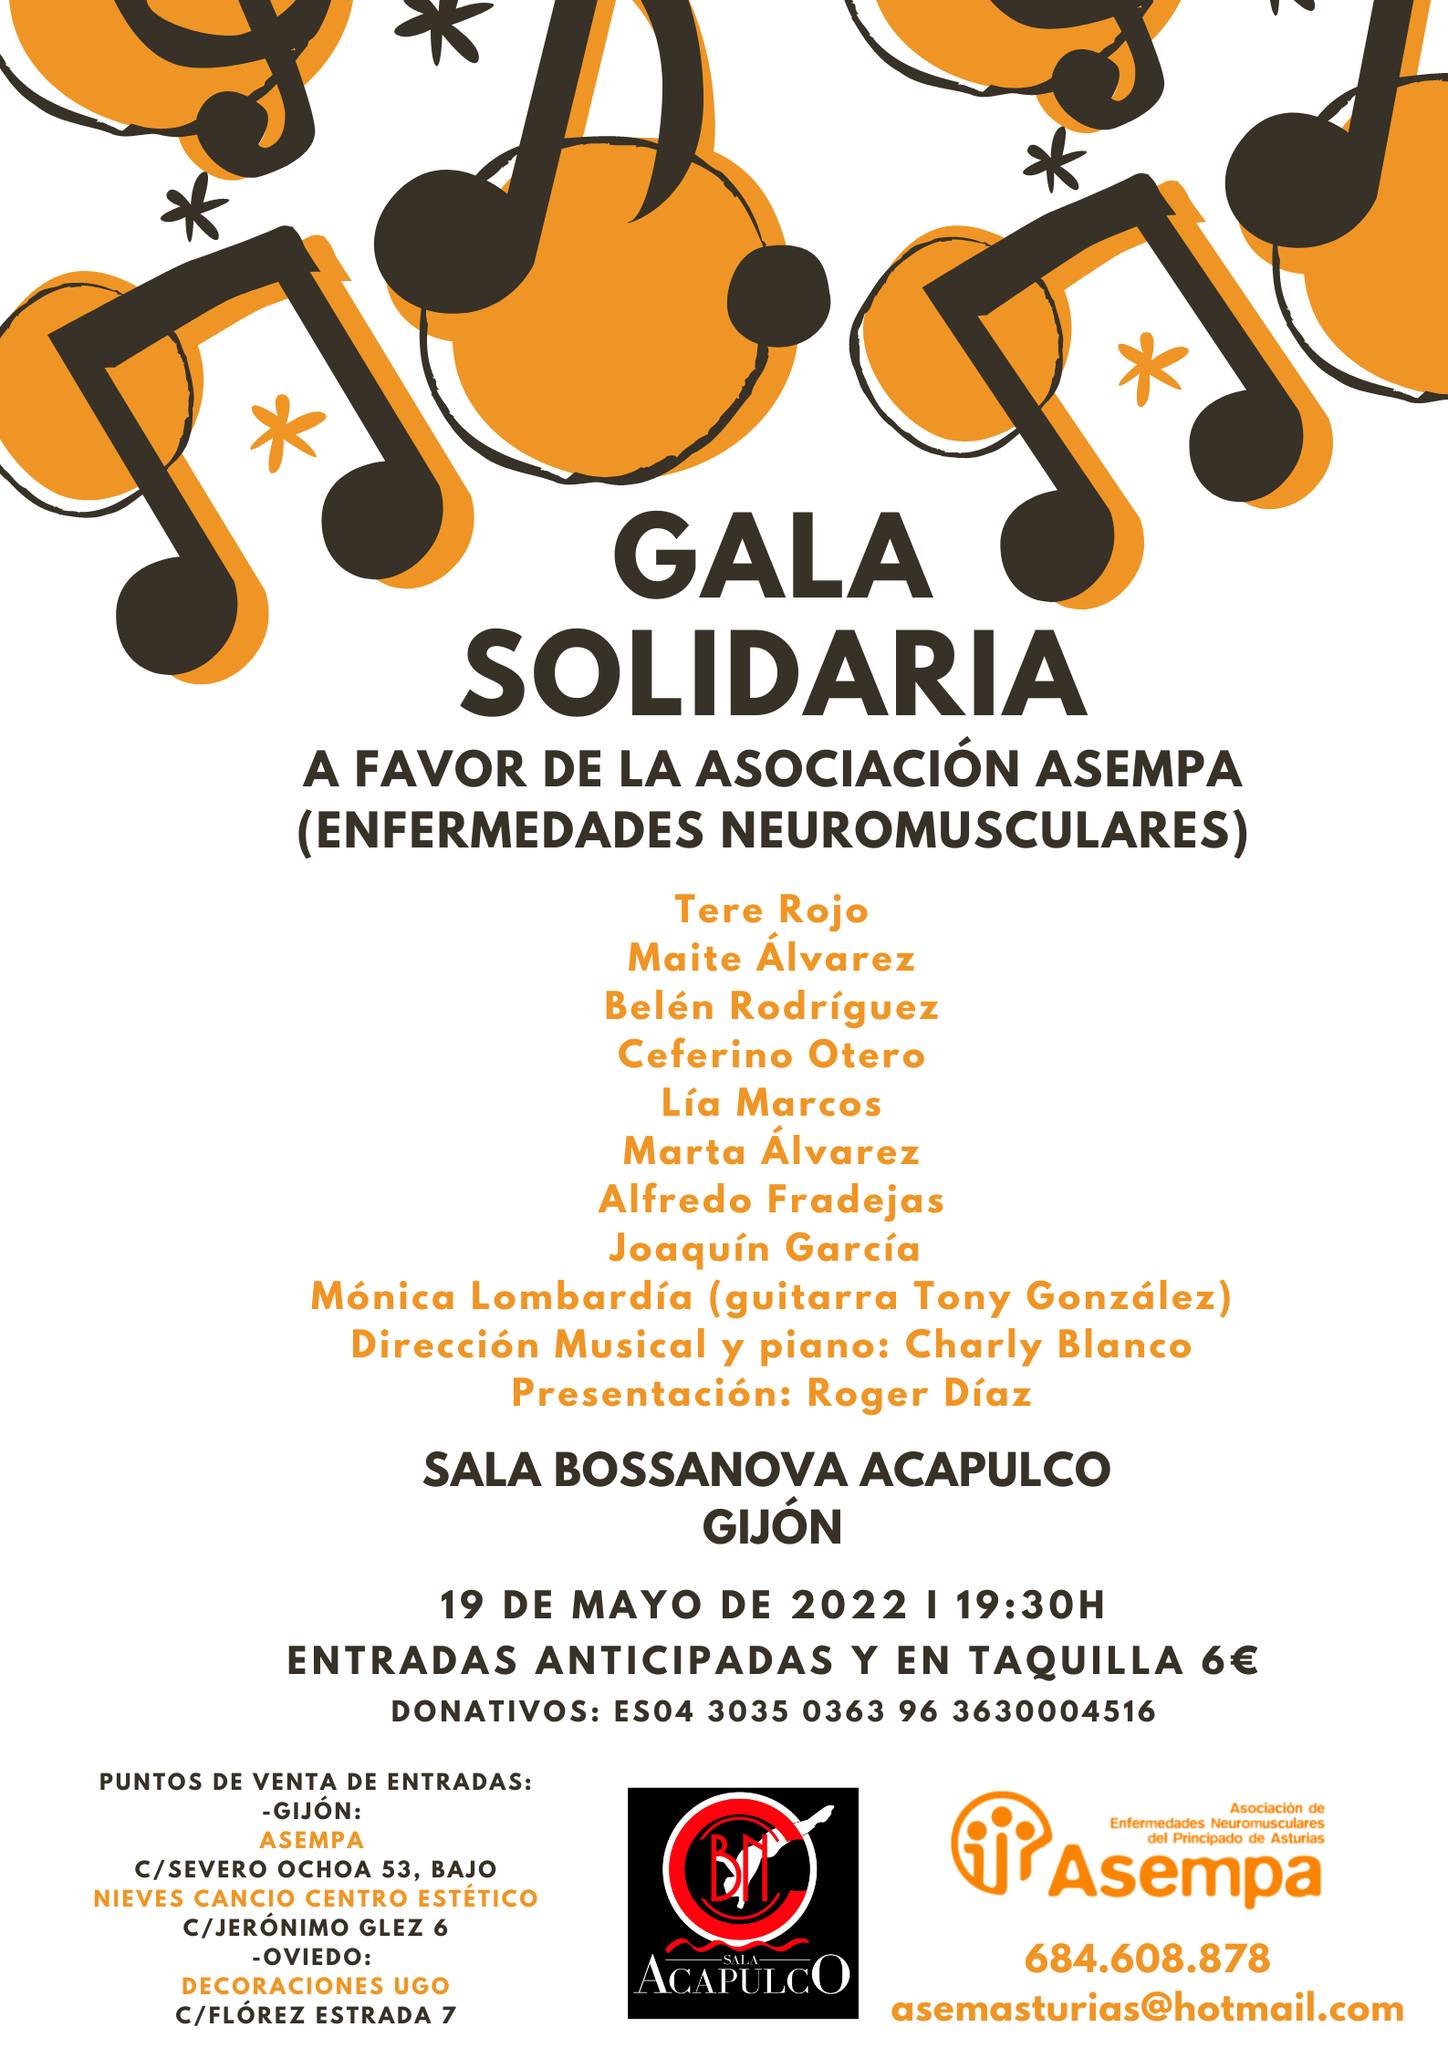 Gala Solidaria Asempa